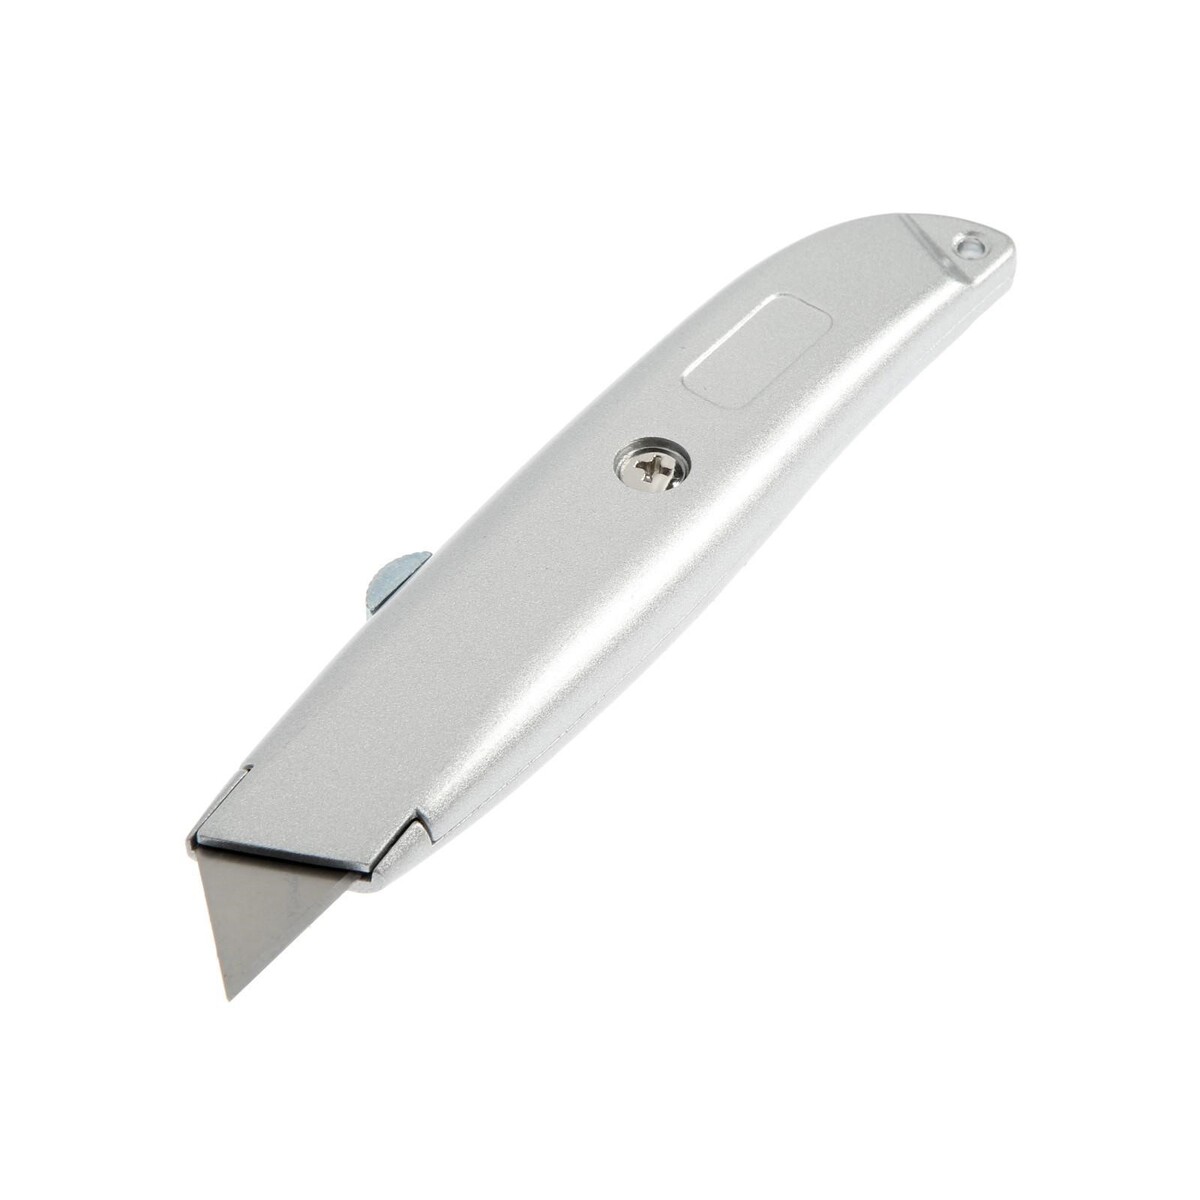 Нож универсальный тундра, металлический корпус, трапециевидное лезвие, 19 мм нож универсальный тундра усиленный металлический квадратный фиксатор 18 мм